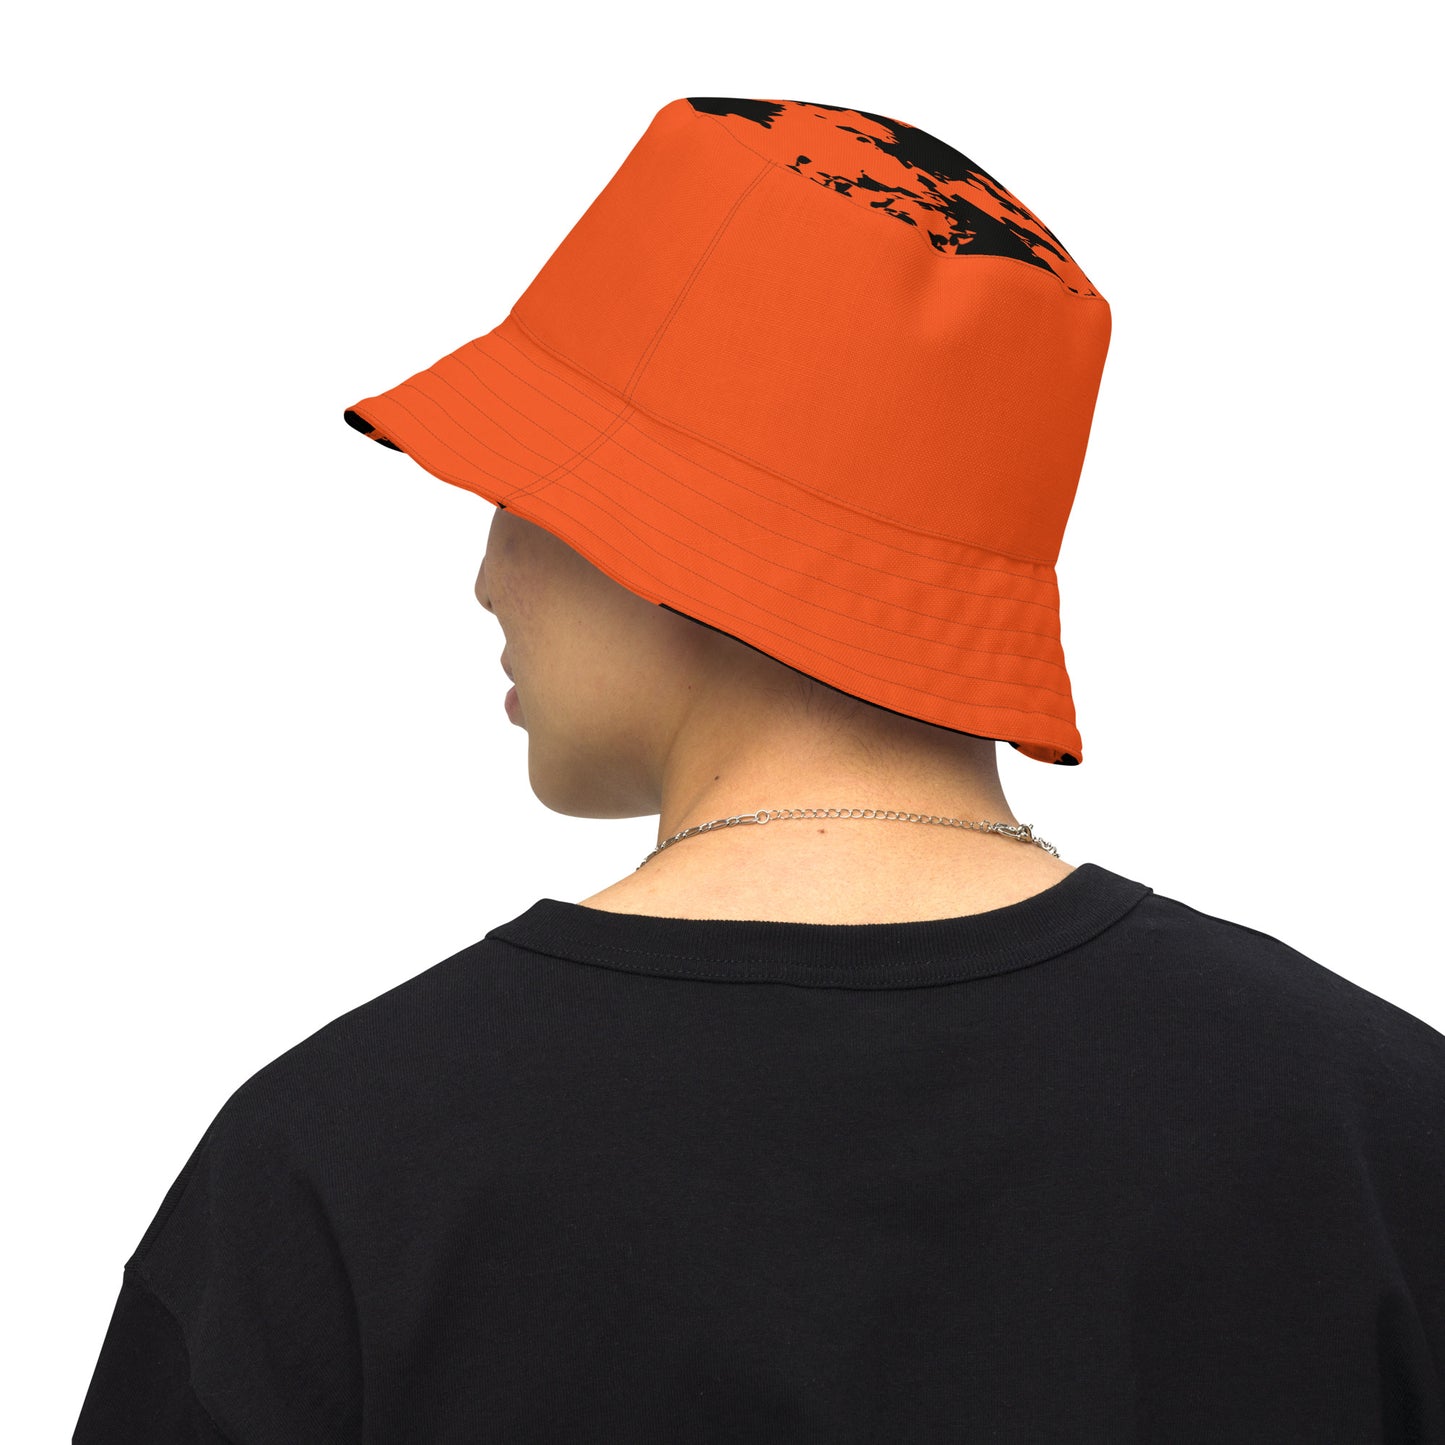 Kicxs Bengals Reversible Bucket Hat